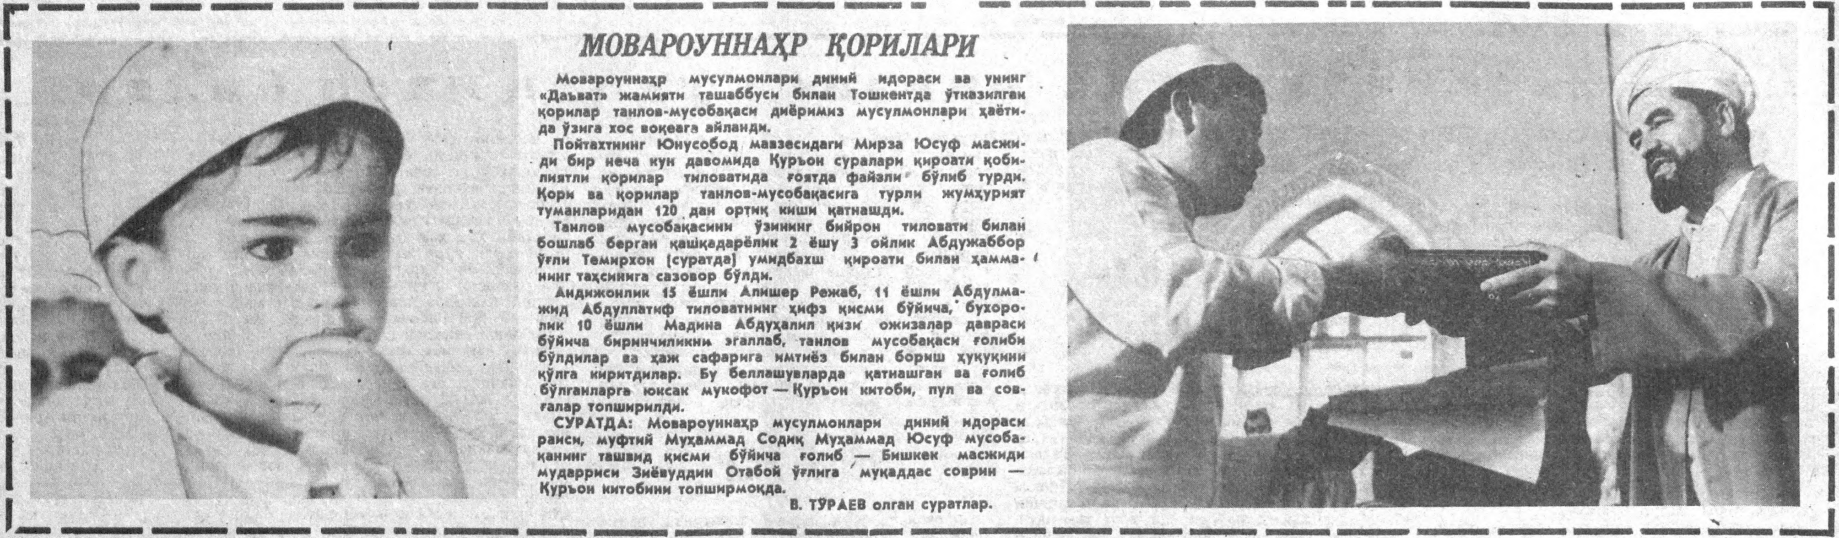 «Ўзбекистон овози» газетасининг 1992 йил 19 май сонидан лавҳа